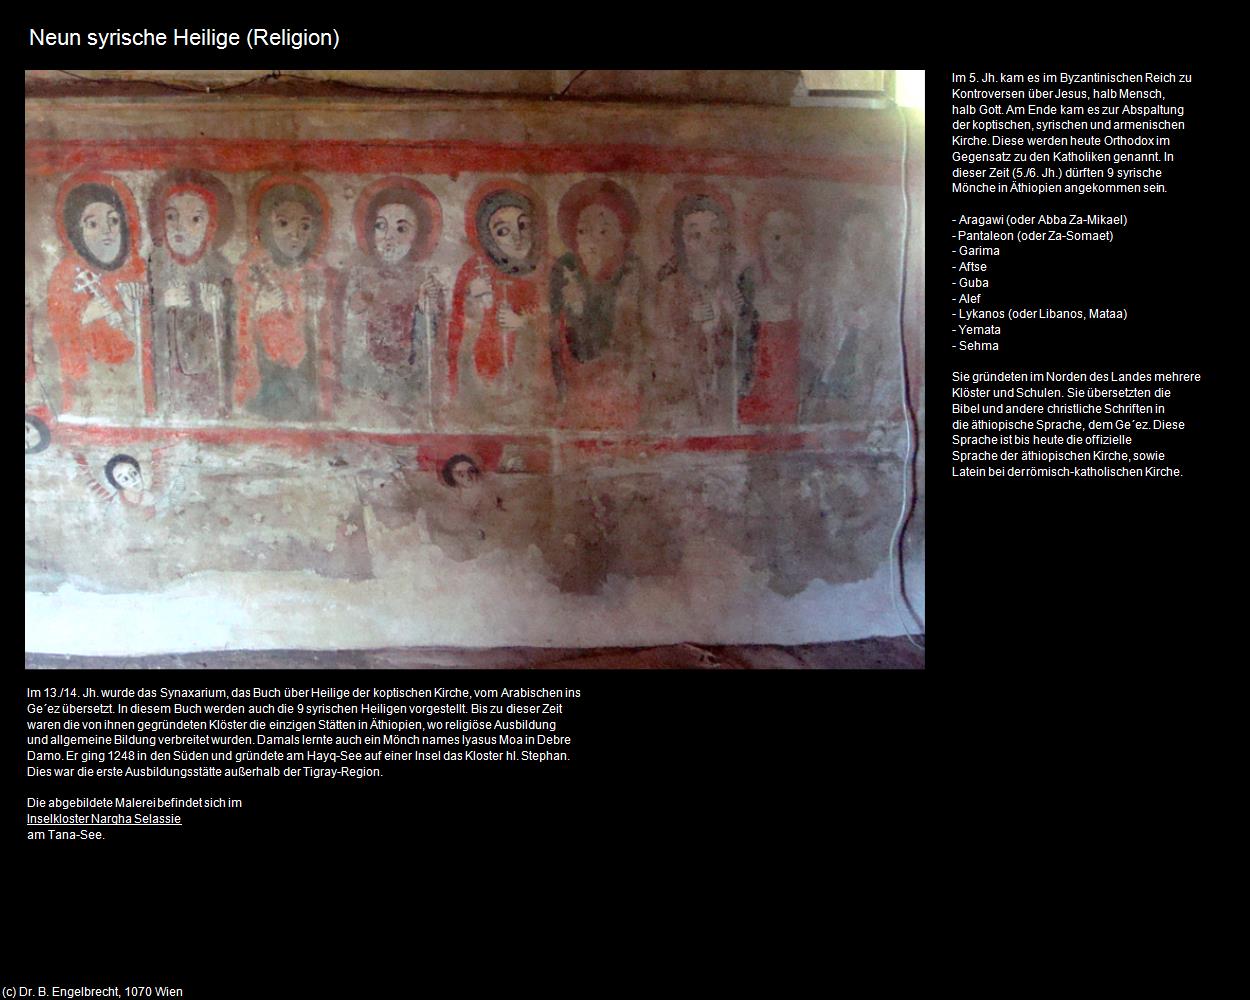 Neun syrische Heilige  (+Religion) in Äthiopien(c)B.Engelbrecht